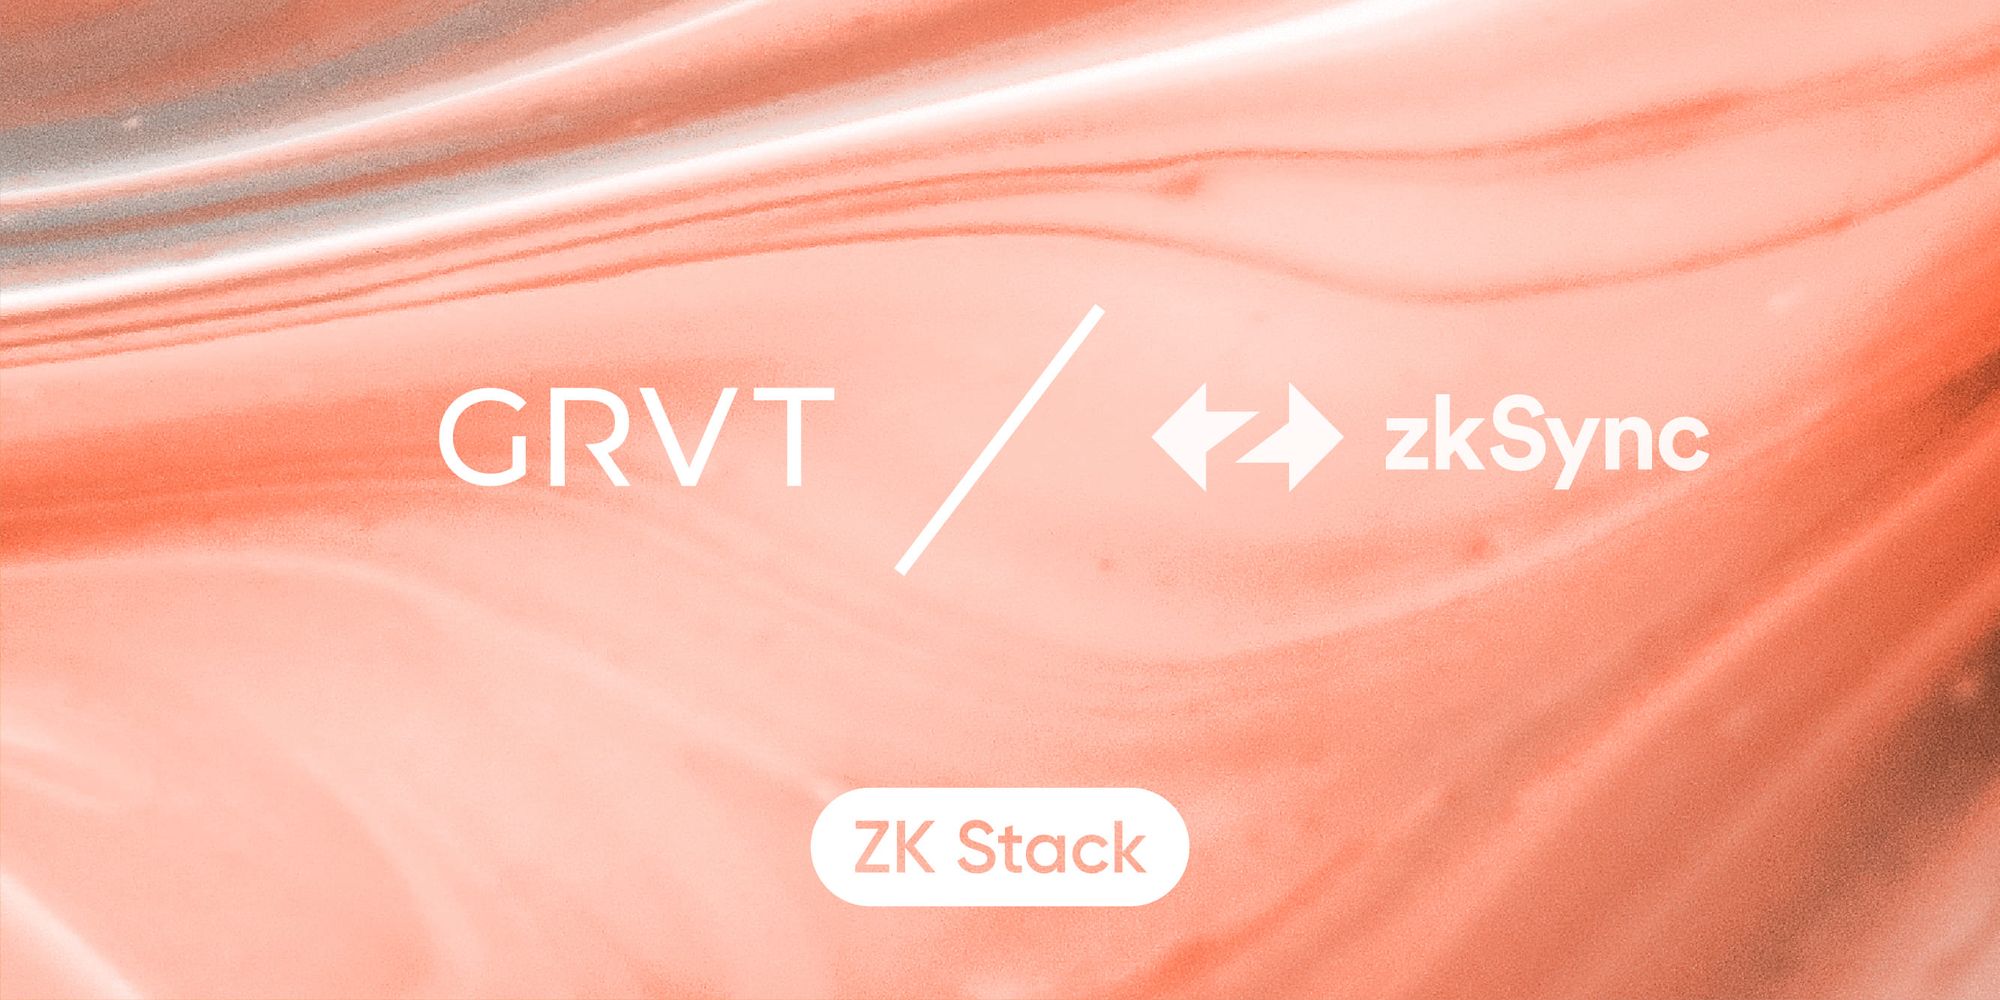 하이브리드 거래소 GRVT: 2조 9천억 달러 규모의  크립토 파생 상품 시장을 겨냥한 zkSync의 첫 번째 하이퍼체인